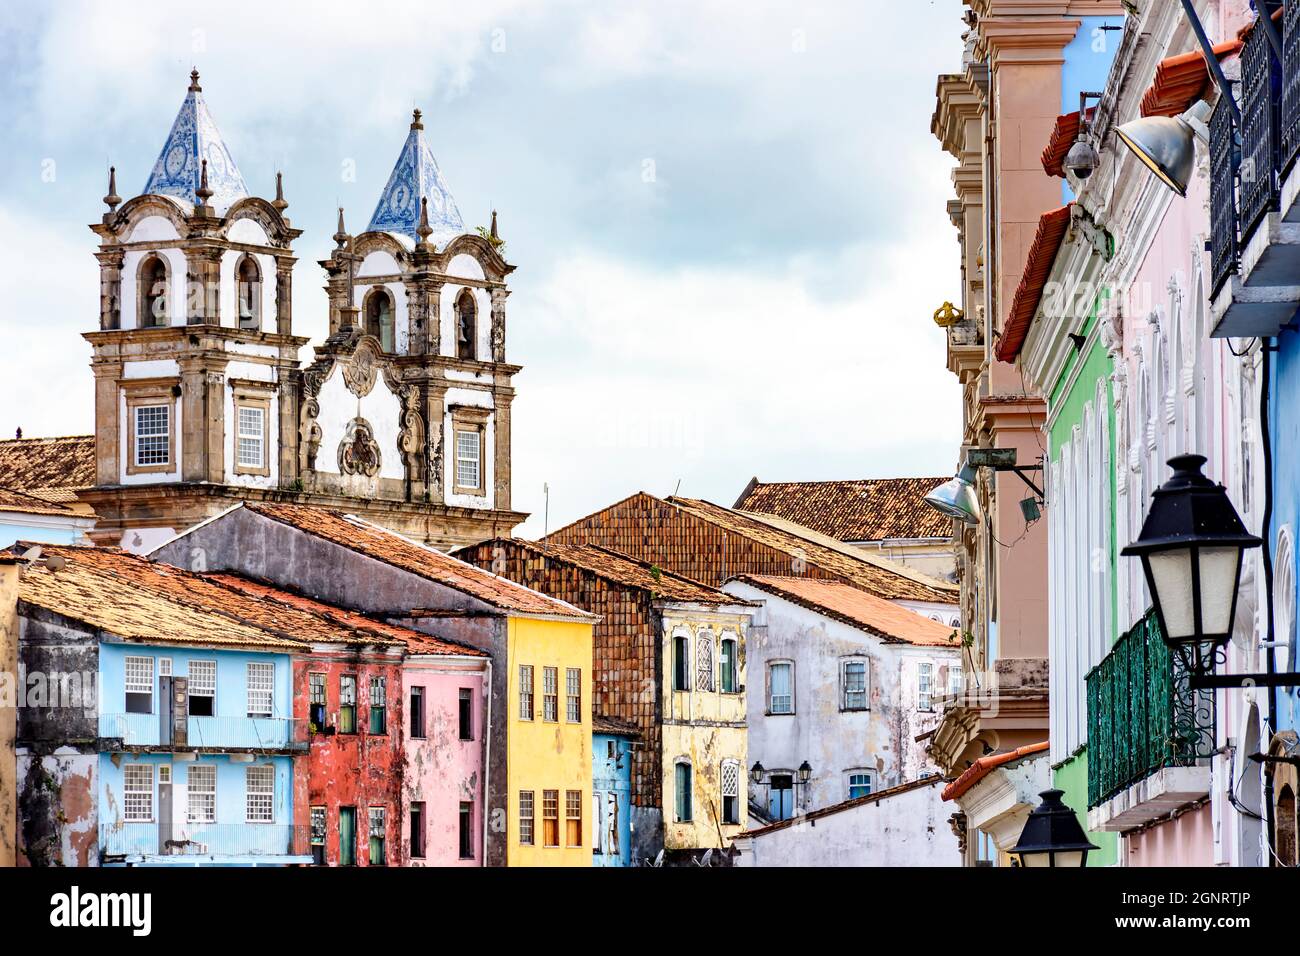 Farbenprächtiges historisches Viertel von Pelourinklusive Kathedralenturm im Hintergrund. Das historische Zentrum von Salvador, Bahia, Brasilien. Stockfoto